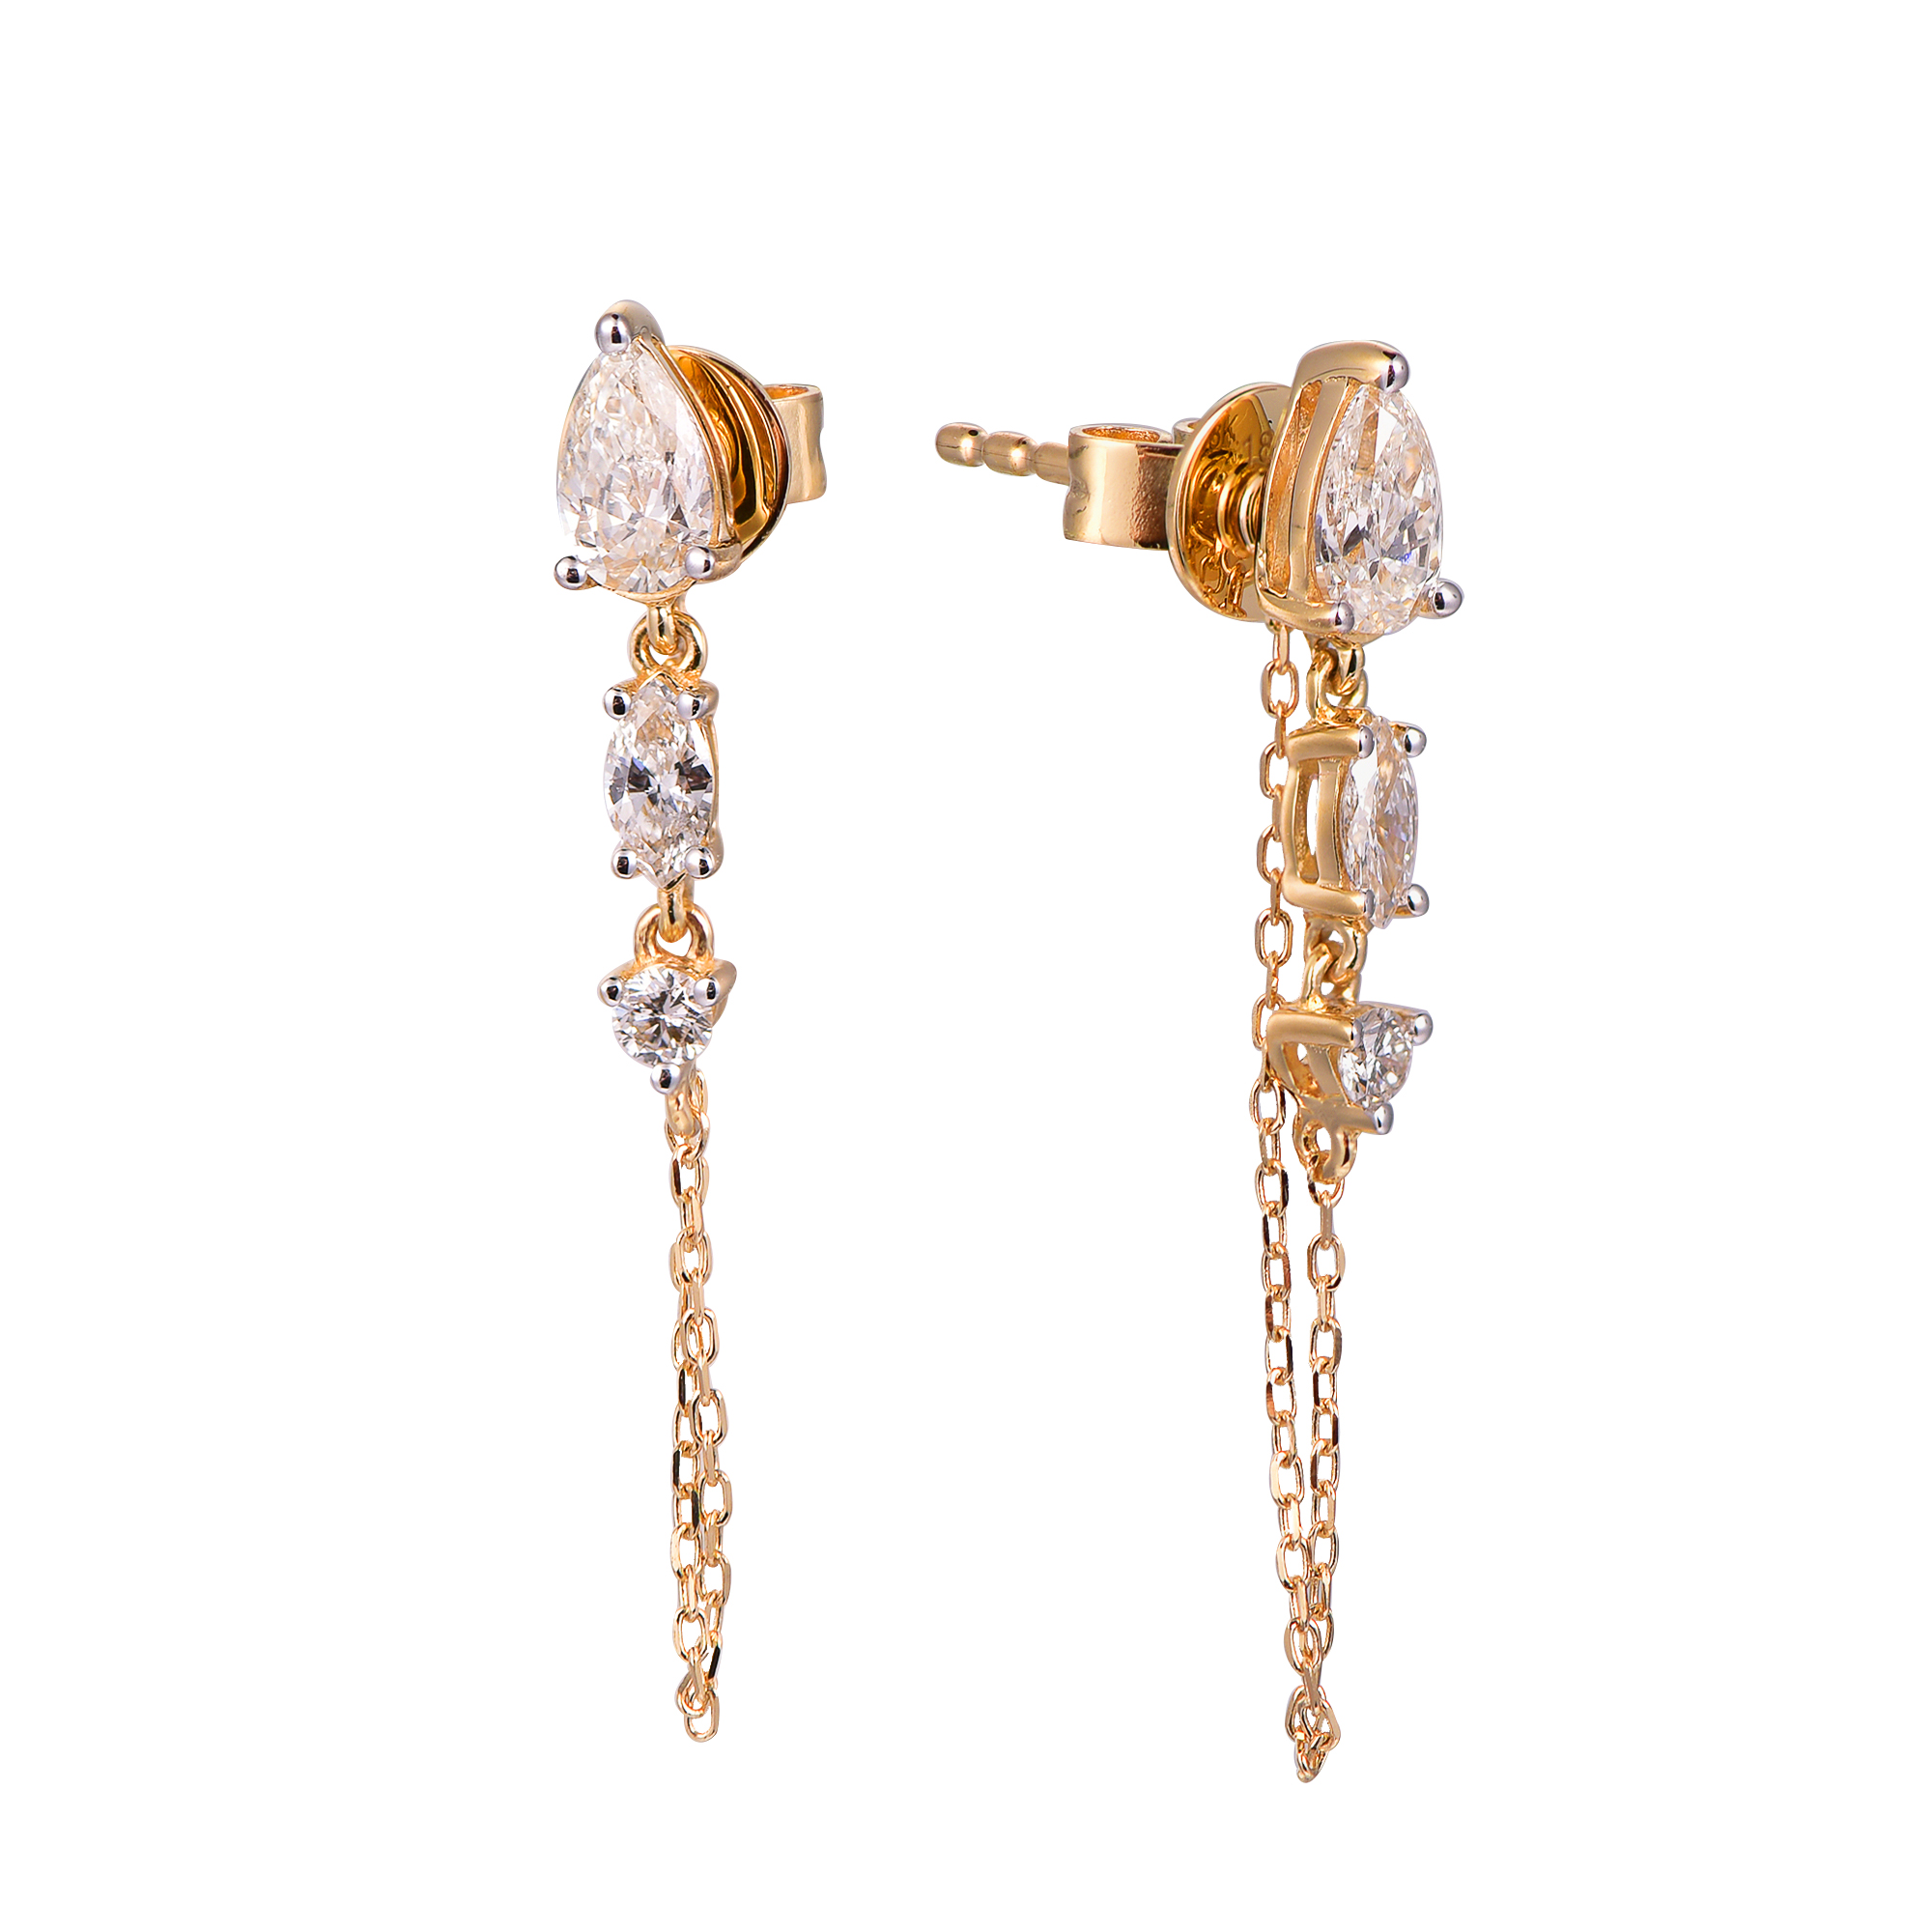 DI45469E 18K yellow gold fancy diamond earrings